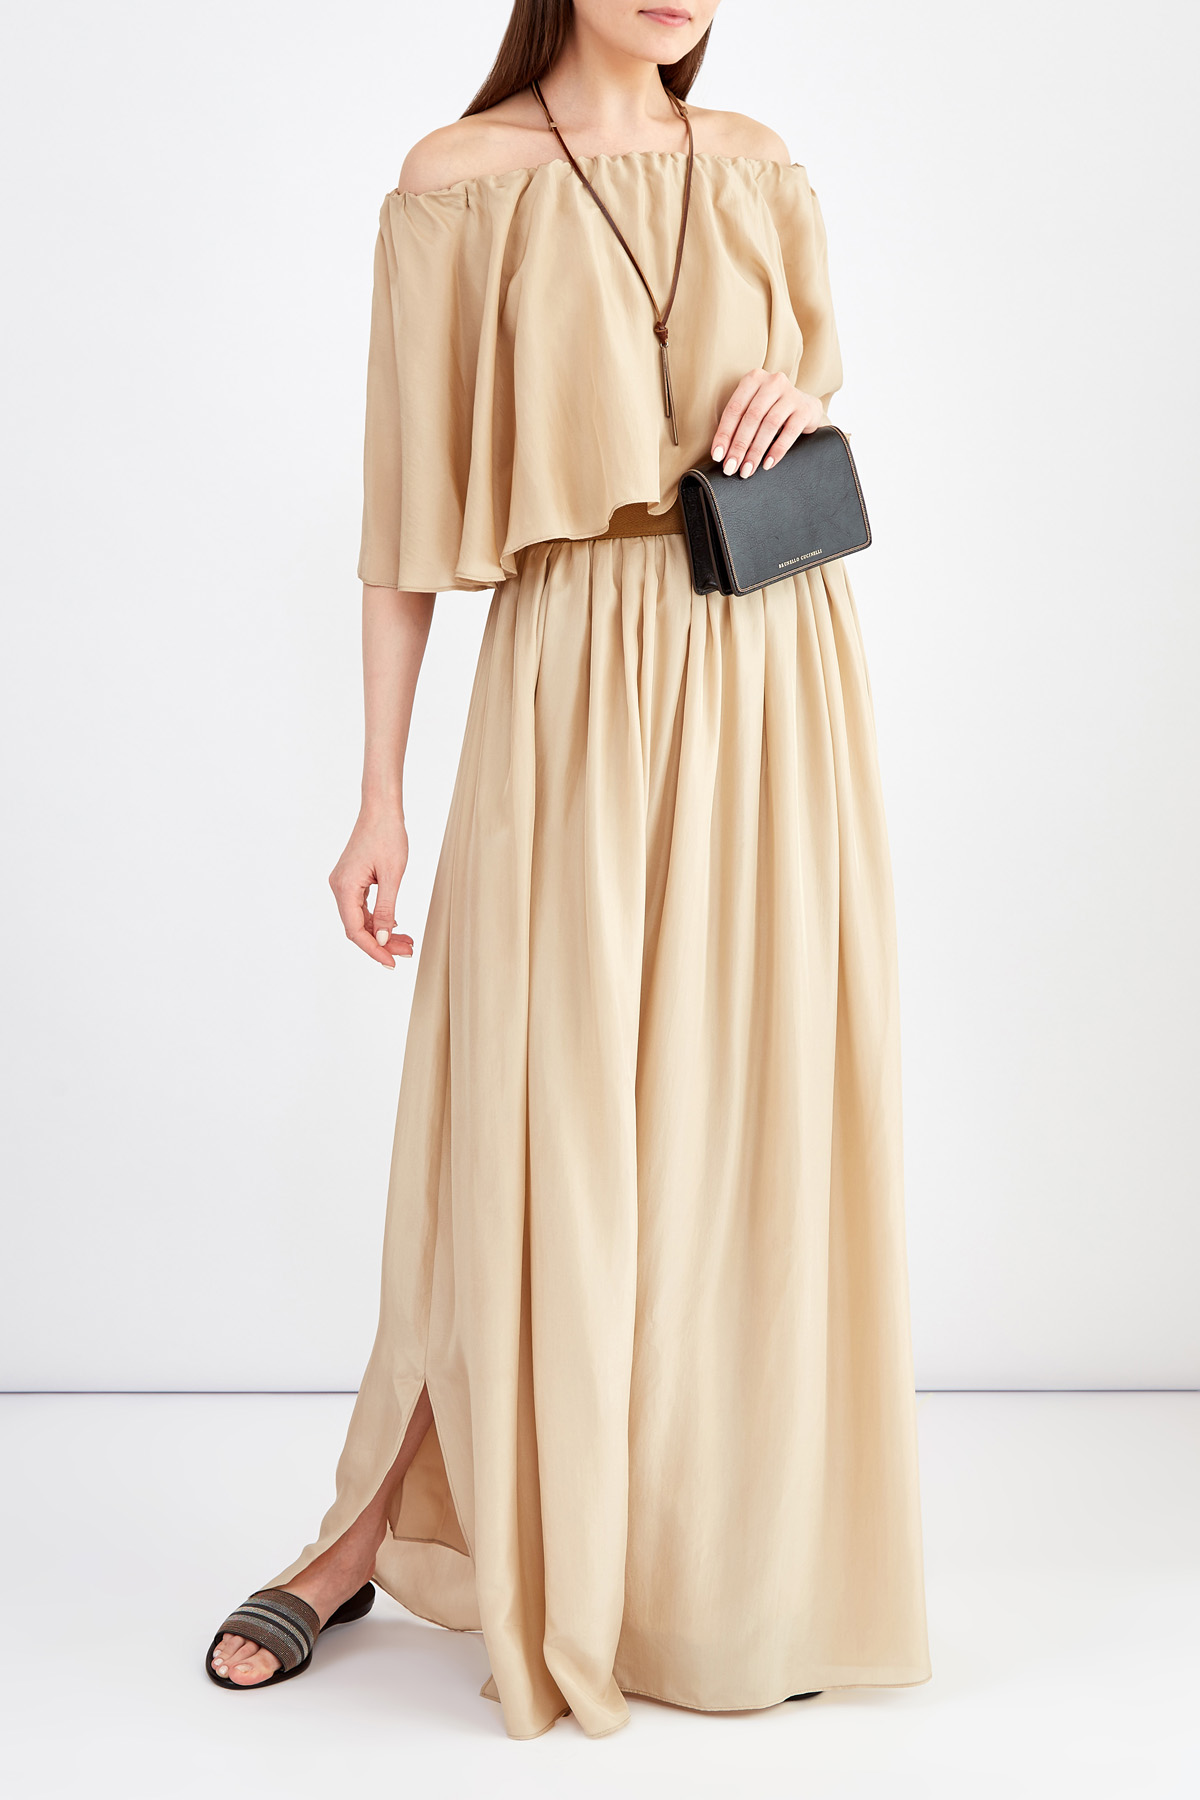 Шелковое платье в пол в стиле бохо с драпировками BRUNELLO CUCINELLI, цвет бежевый, размер 44;42 - фото 2